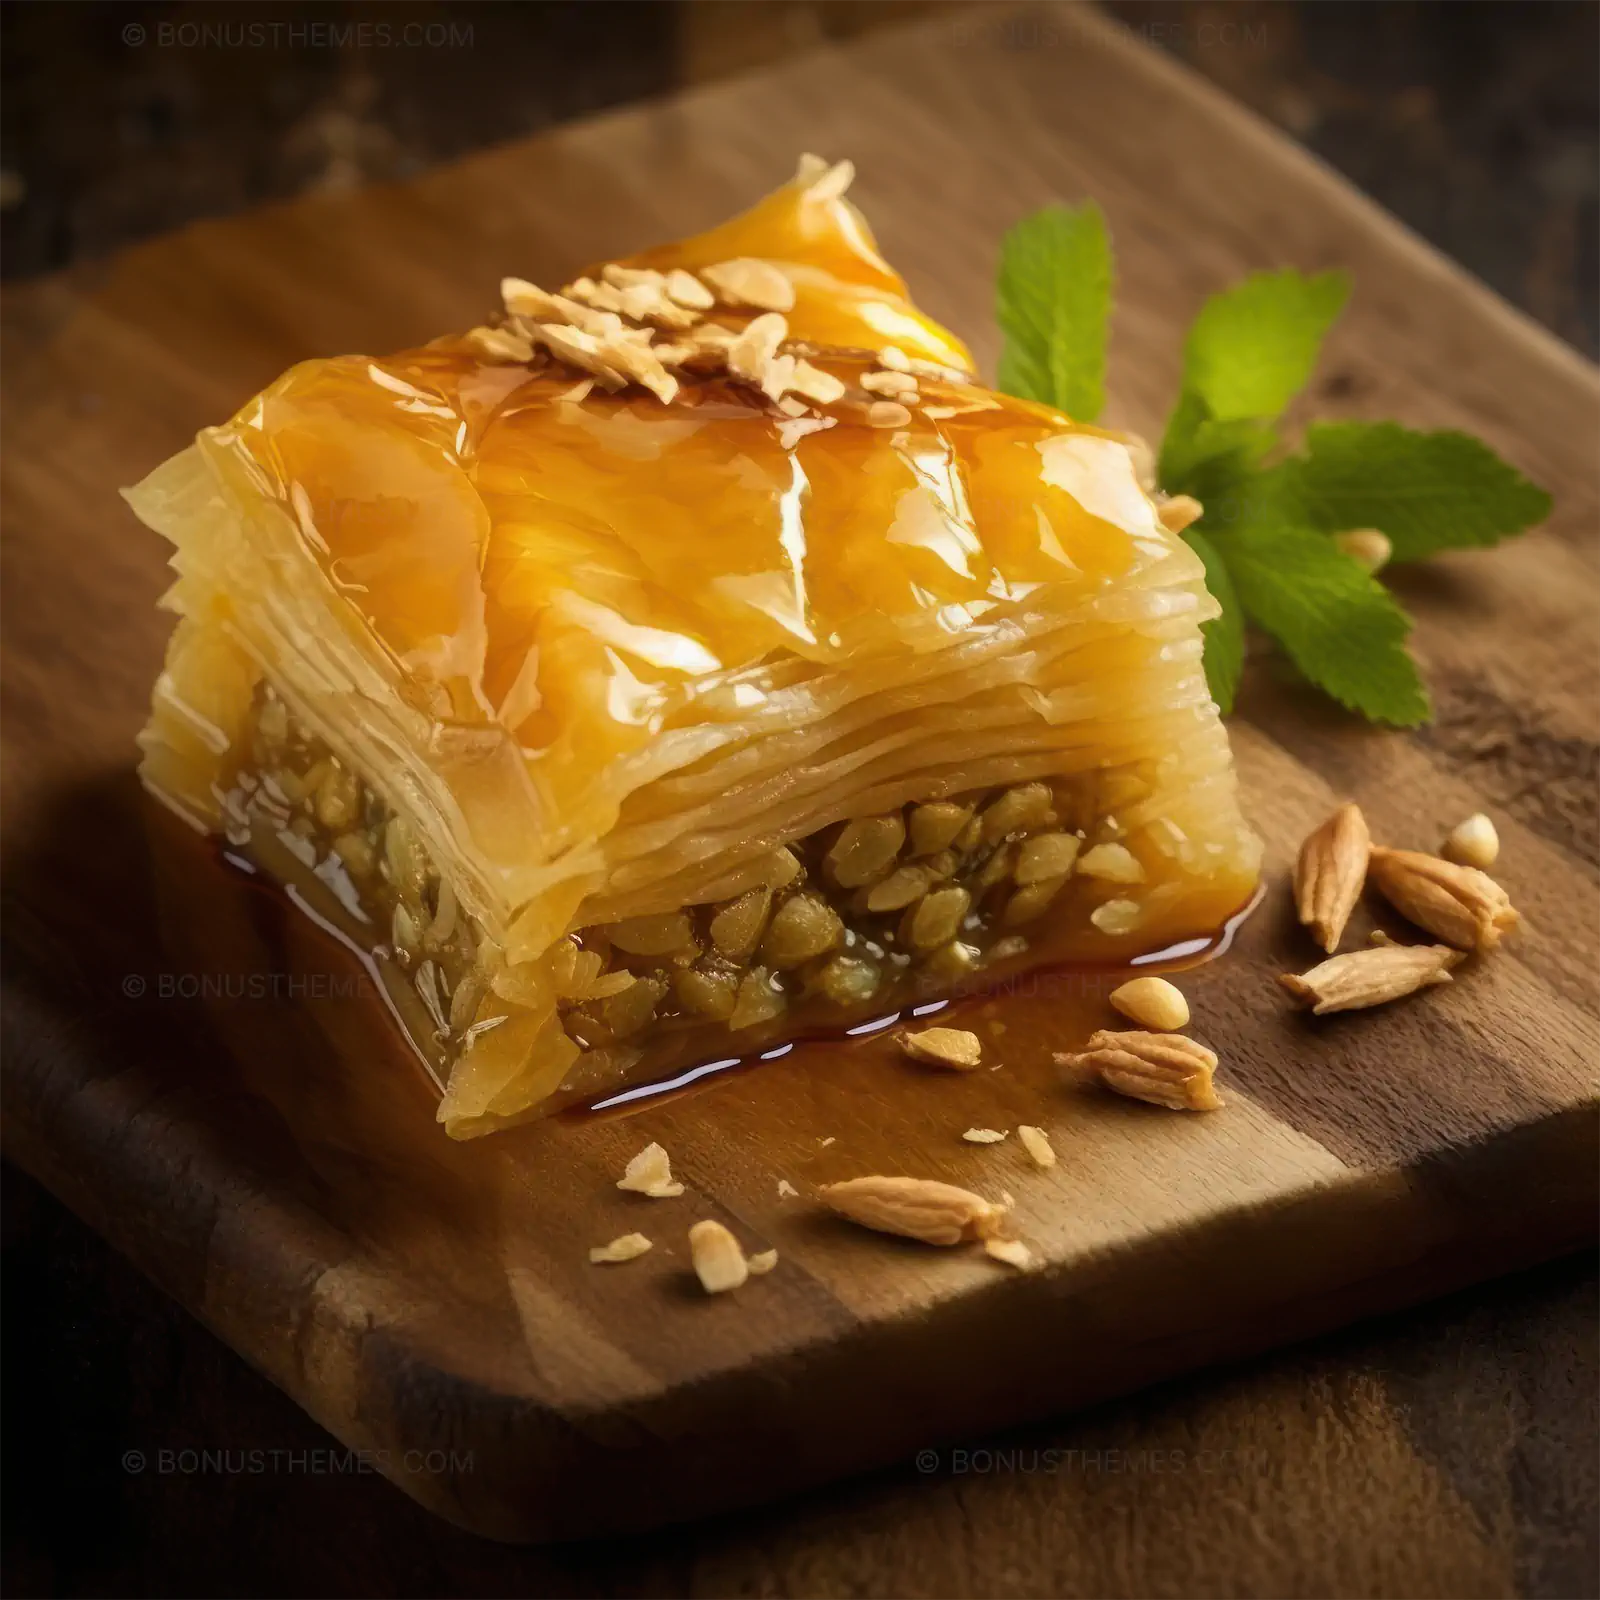 Piece of baklava dessert on a wood